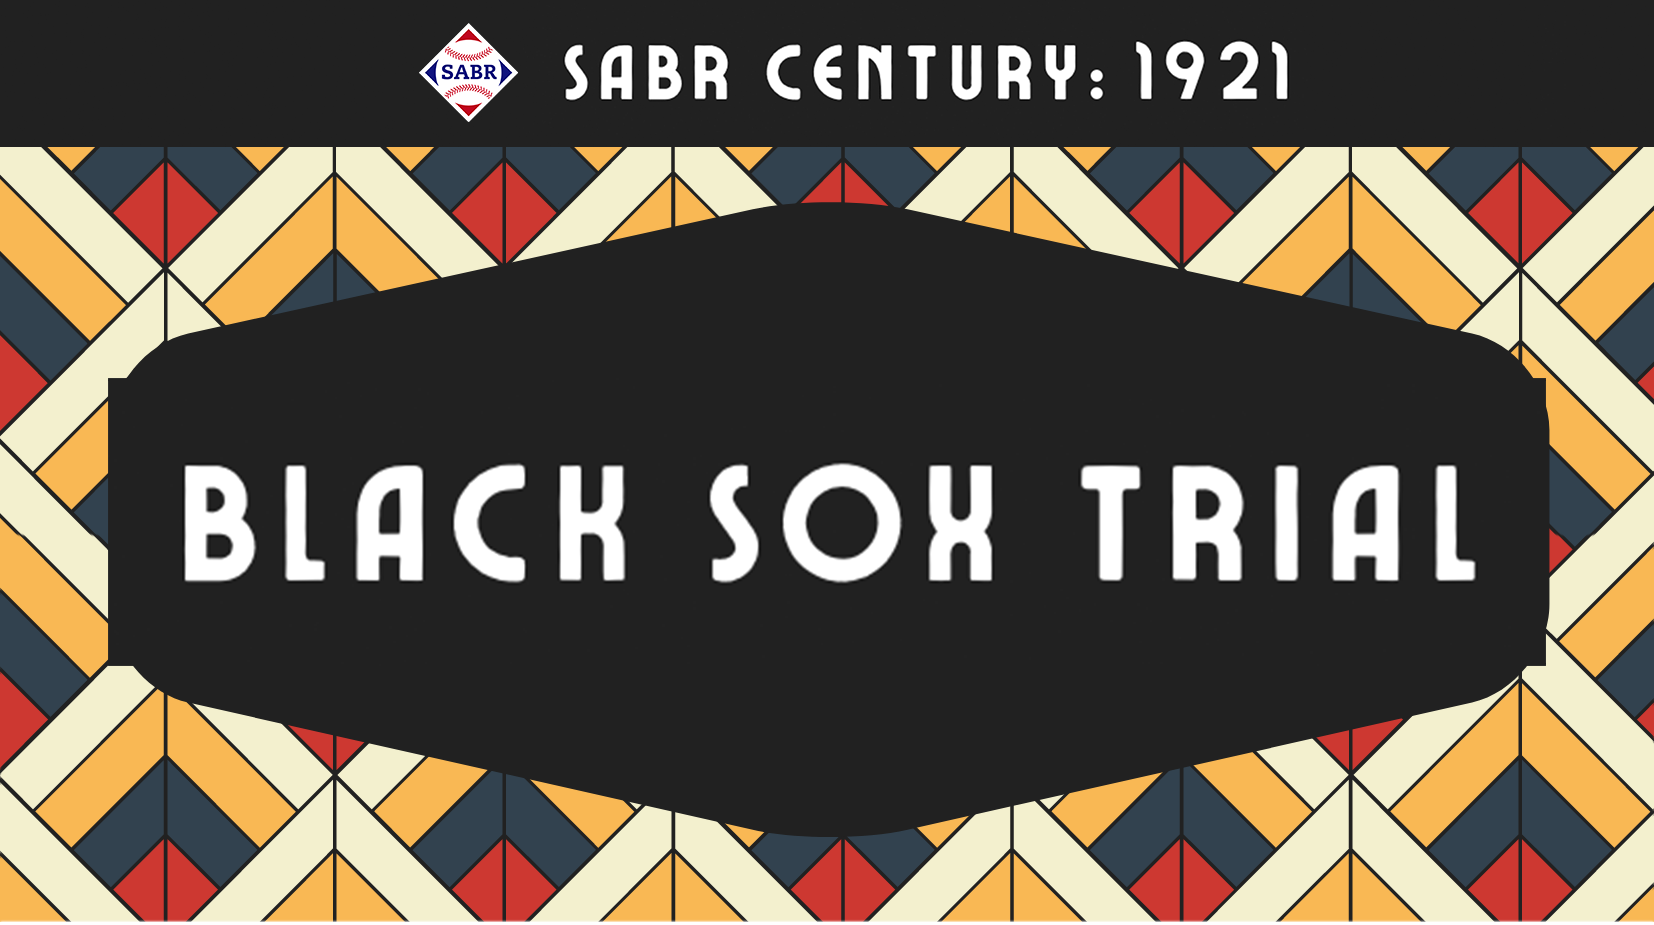 SABR Century: 1921 Black Sox Trial